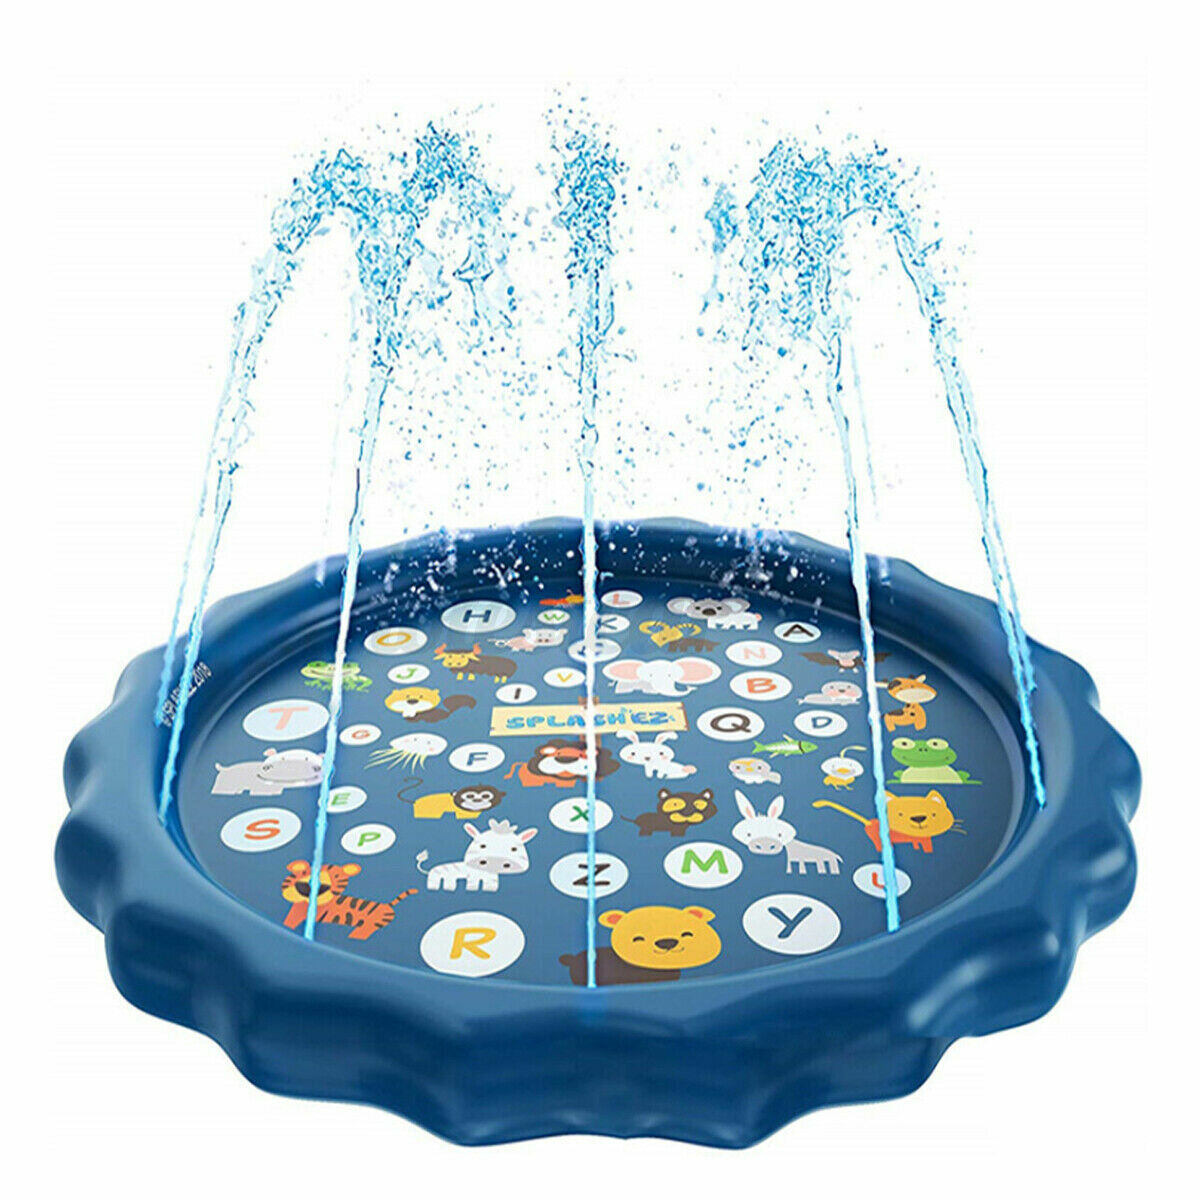 Sprinkle Play Mat Sprinkler Pad for Kids Sprinkler Pool for Children Outdoor Water Toys Learning Edu